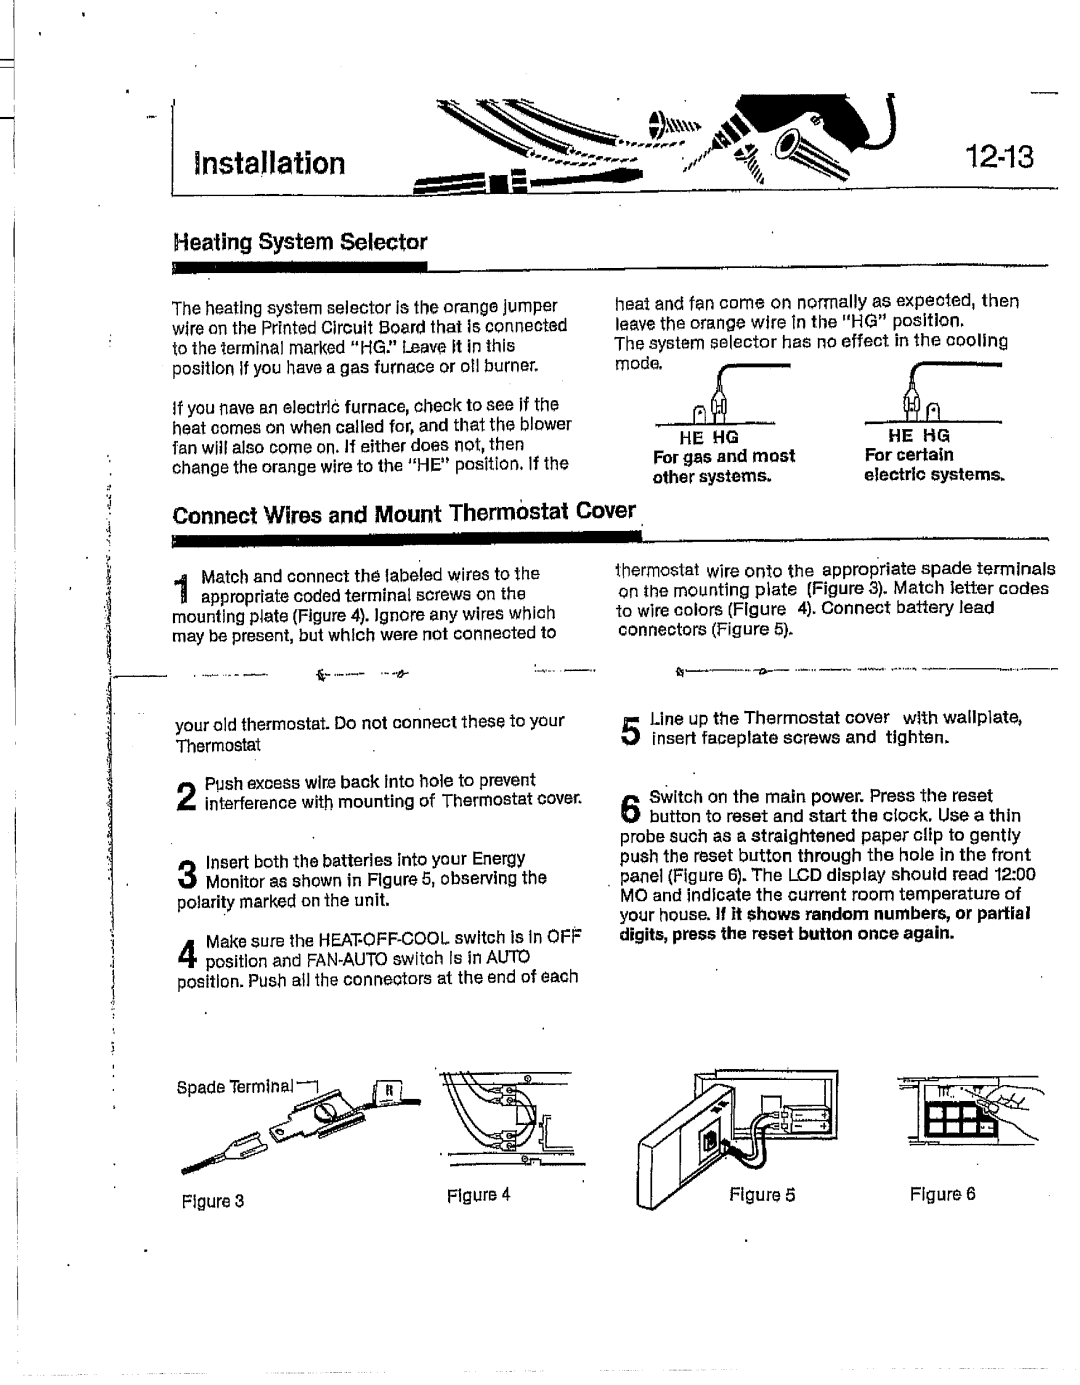 Hunter Fan 42202 manual 